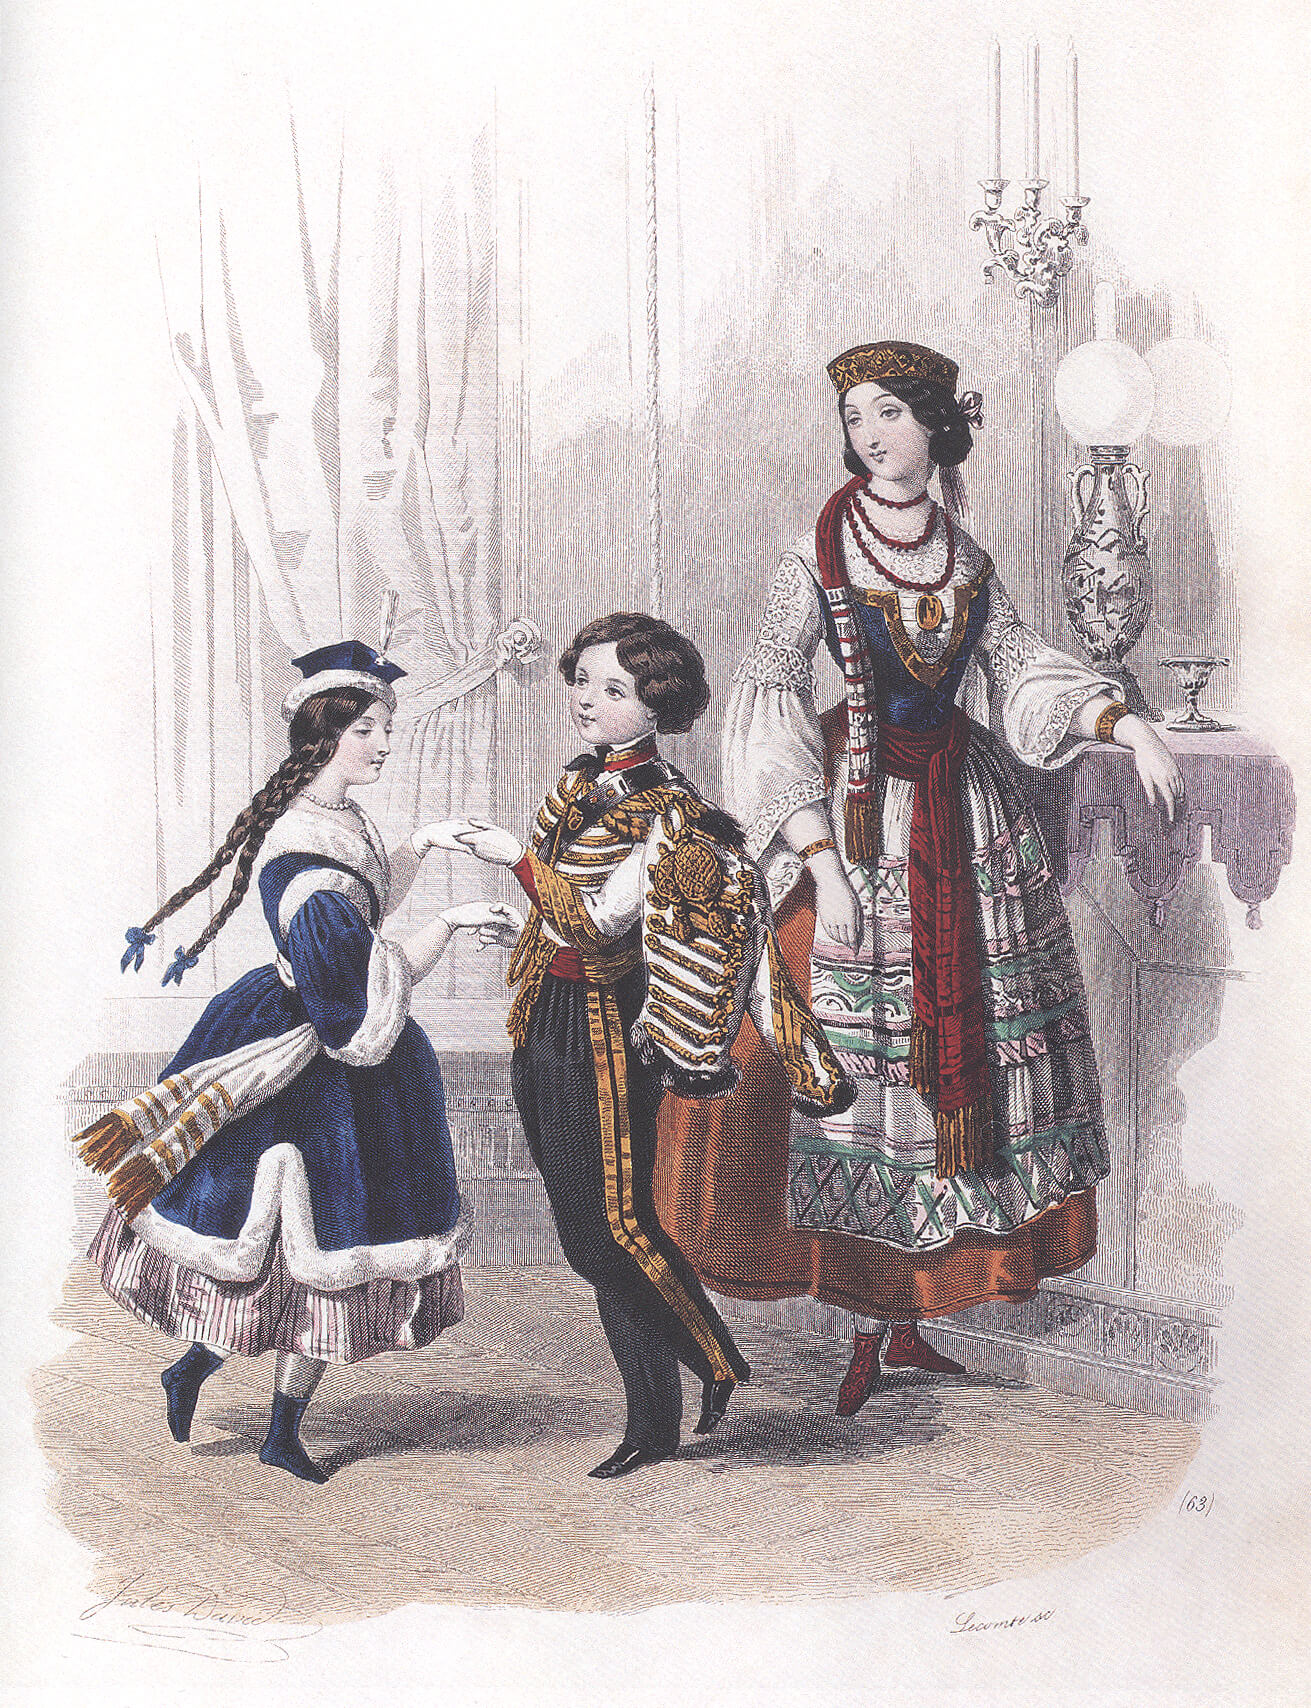 Мода и стиль в одежде 19 века: для мужчин и женщин